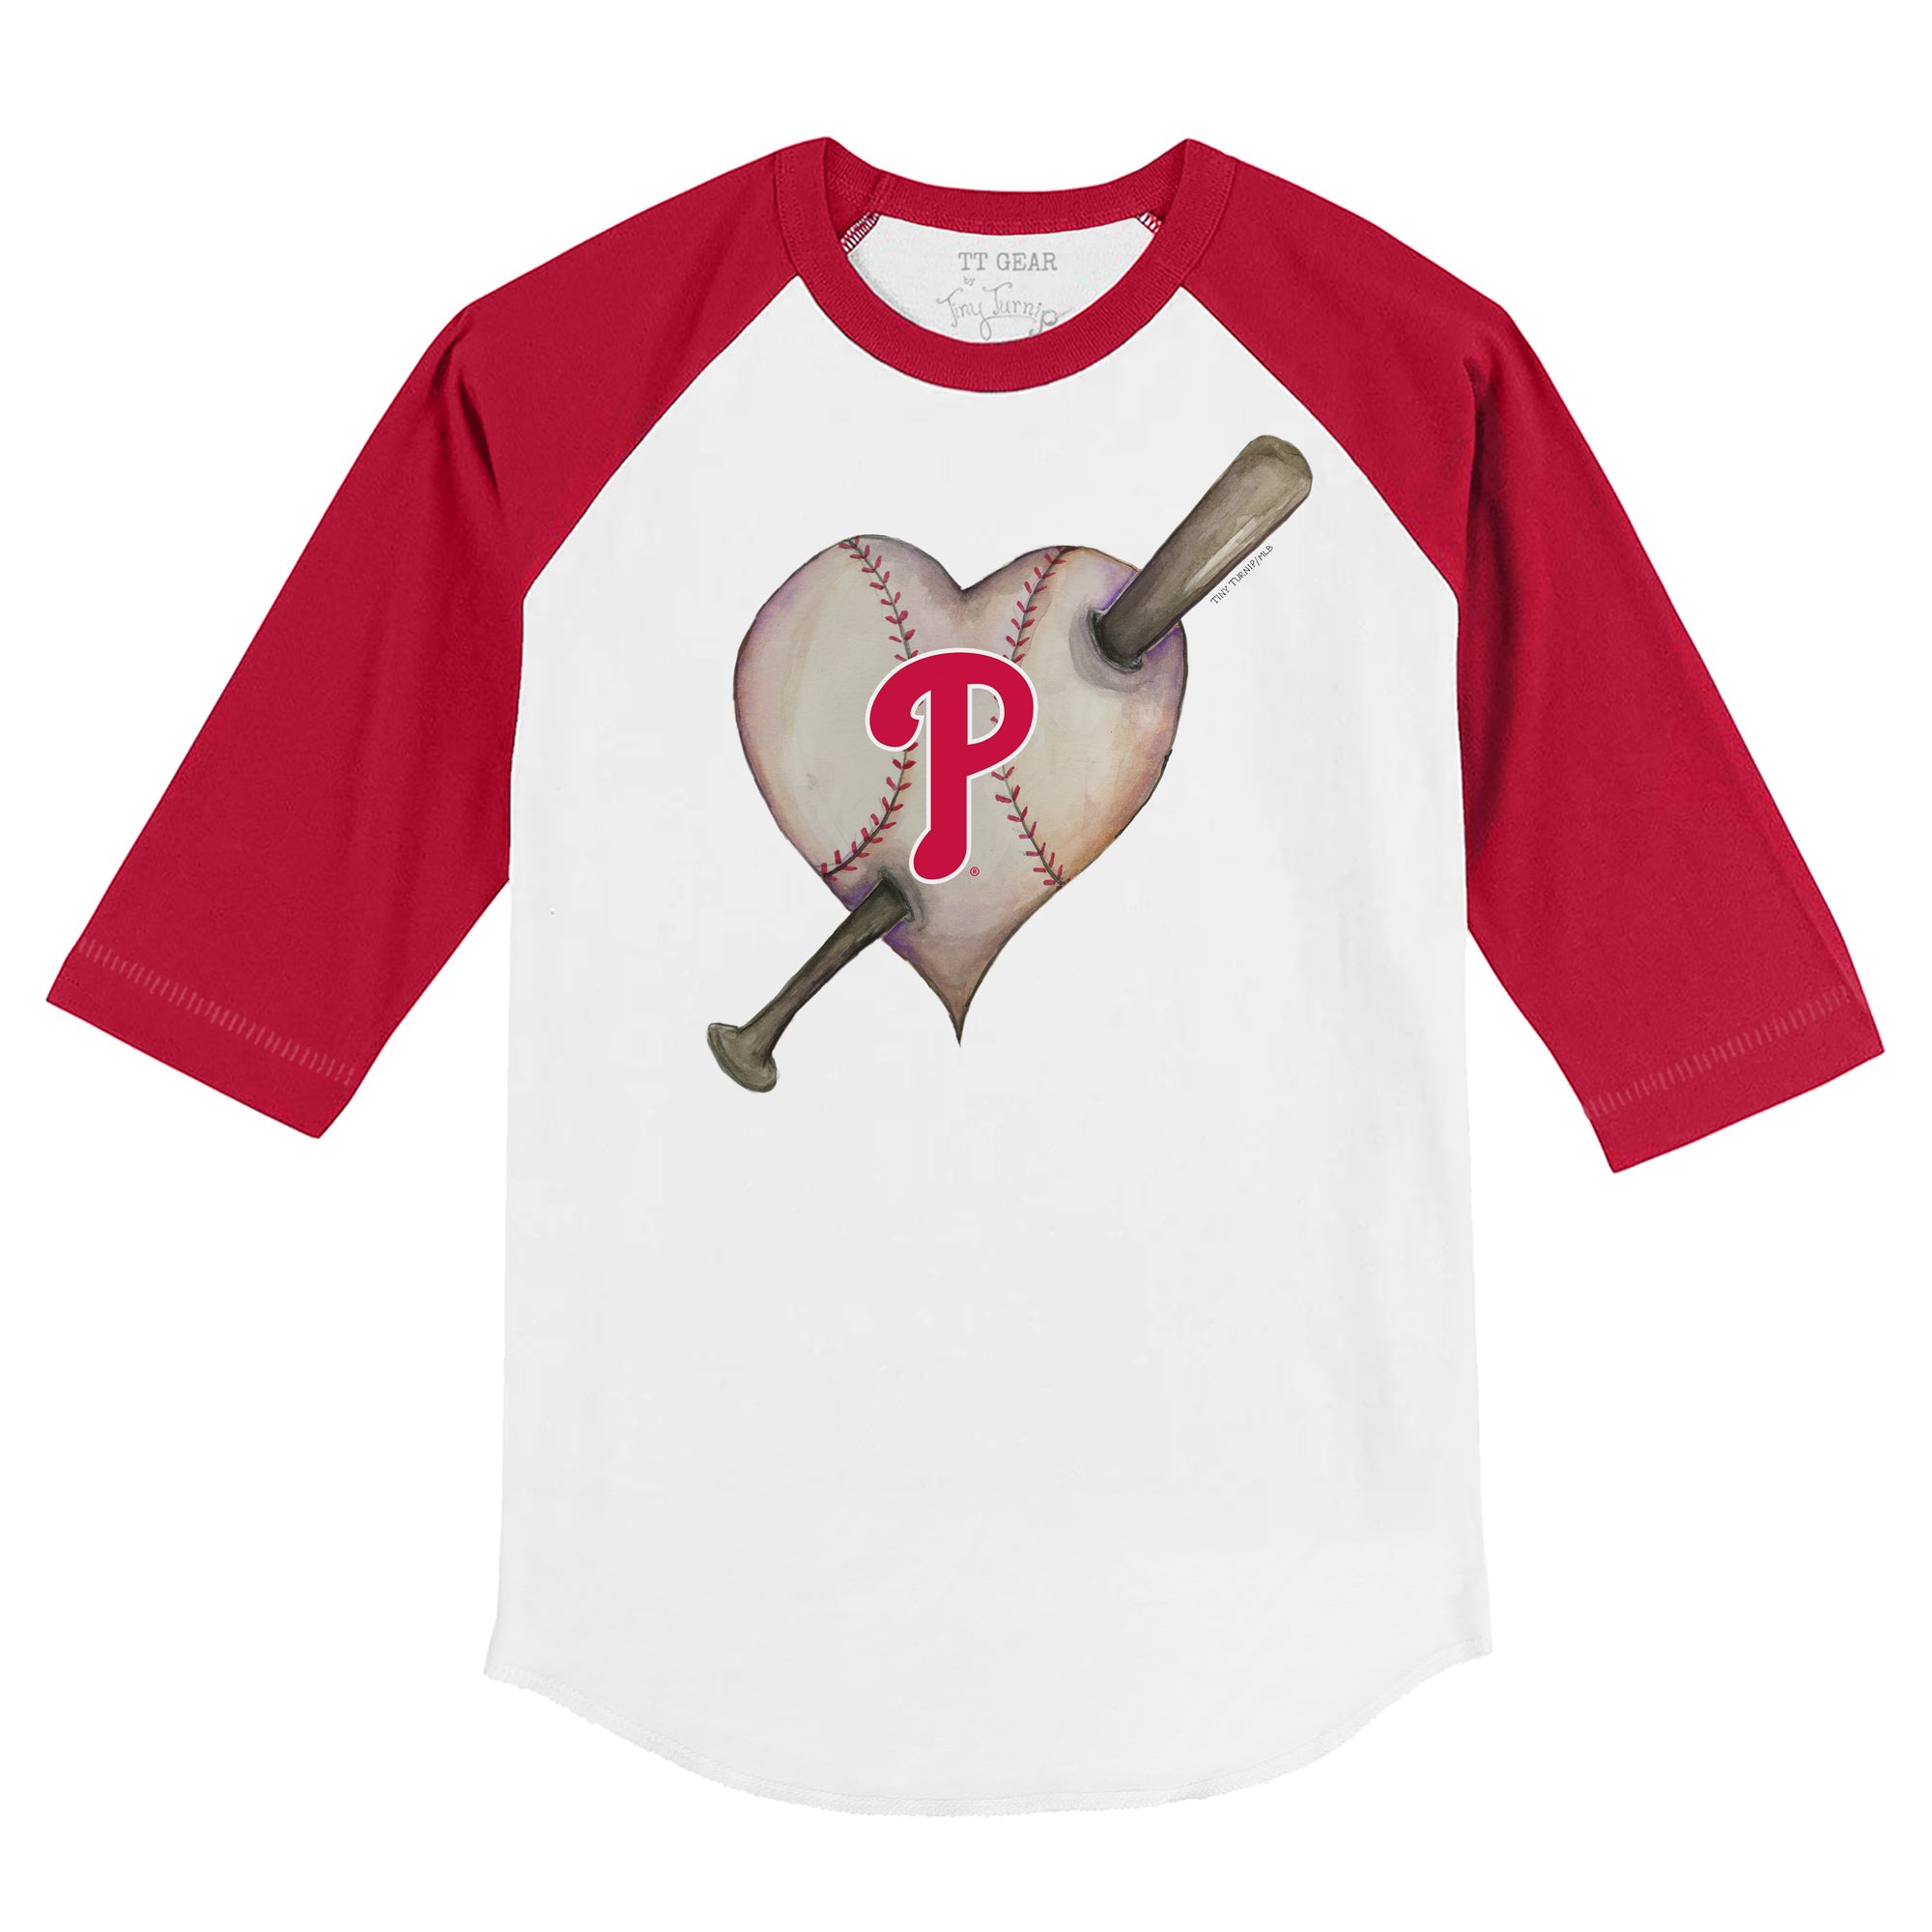 47 Brand / Women's Philadelphia Phillies Red Splitter Raglan Three-Quarter  Sleeve T-Shirt